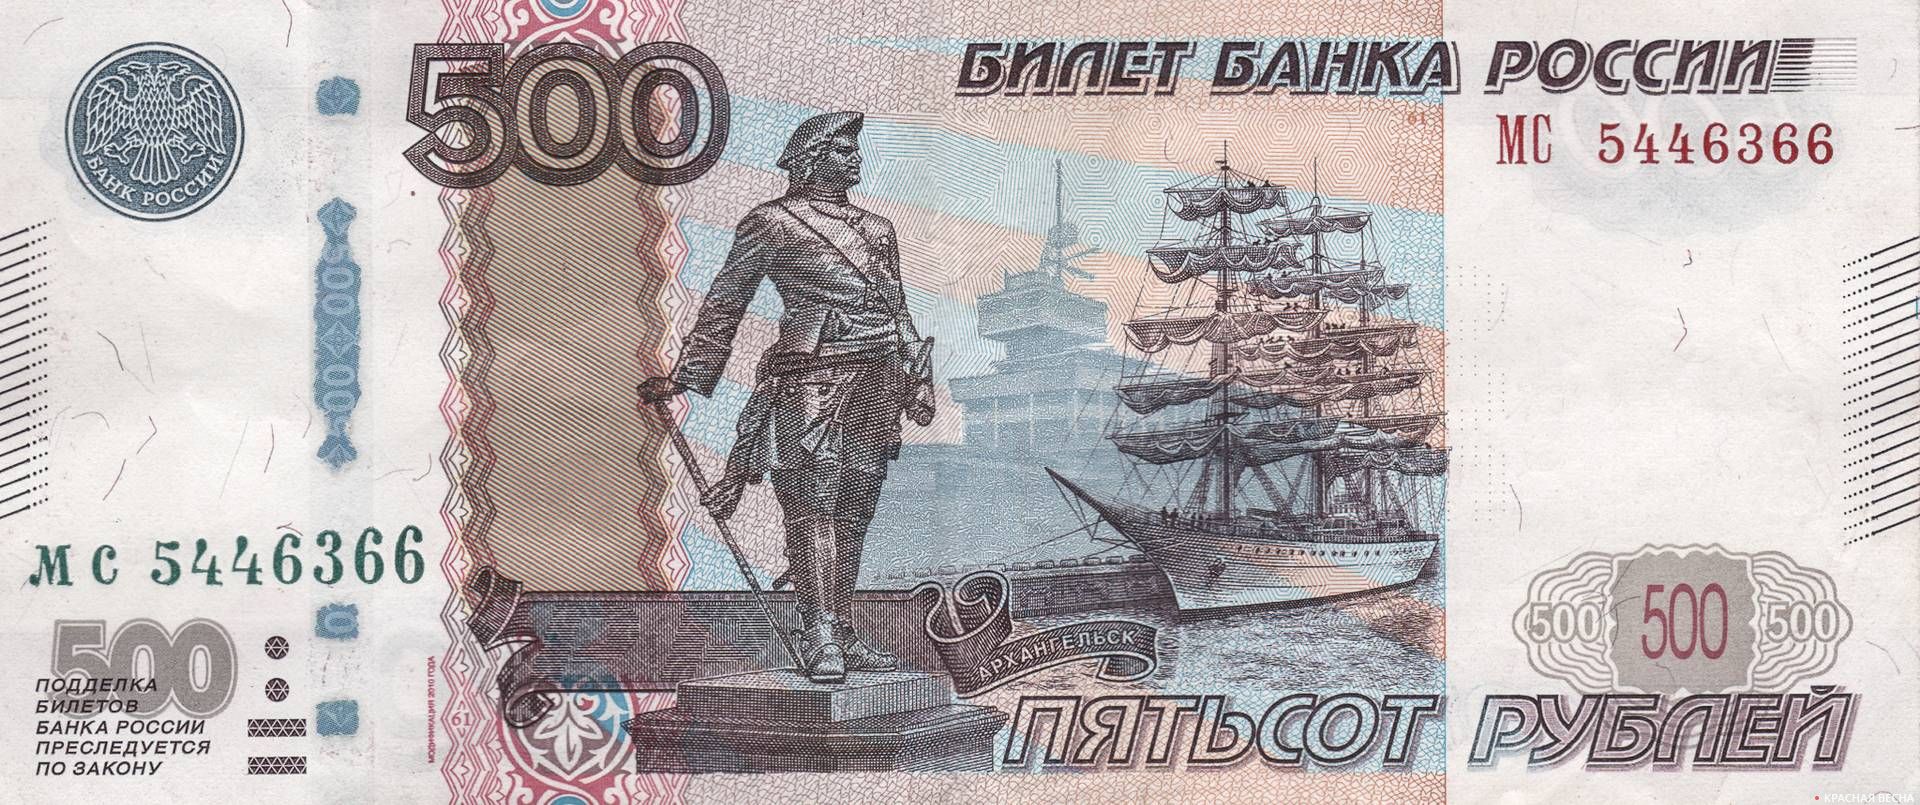  500 рублей с изображением Архангельска